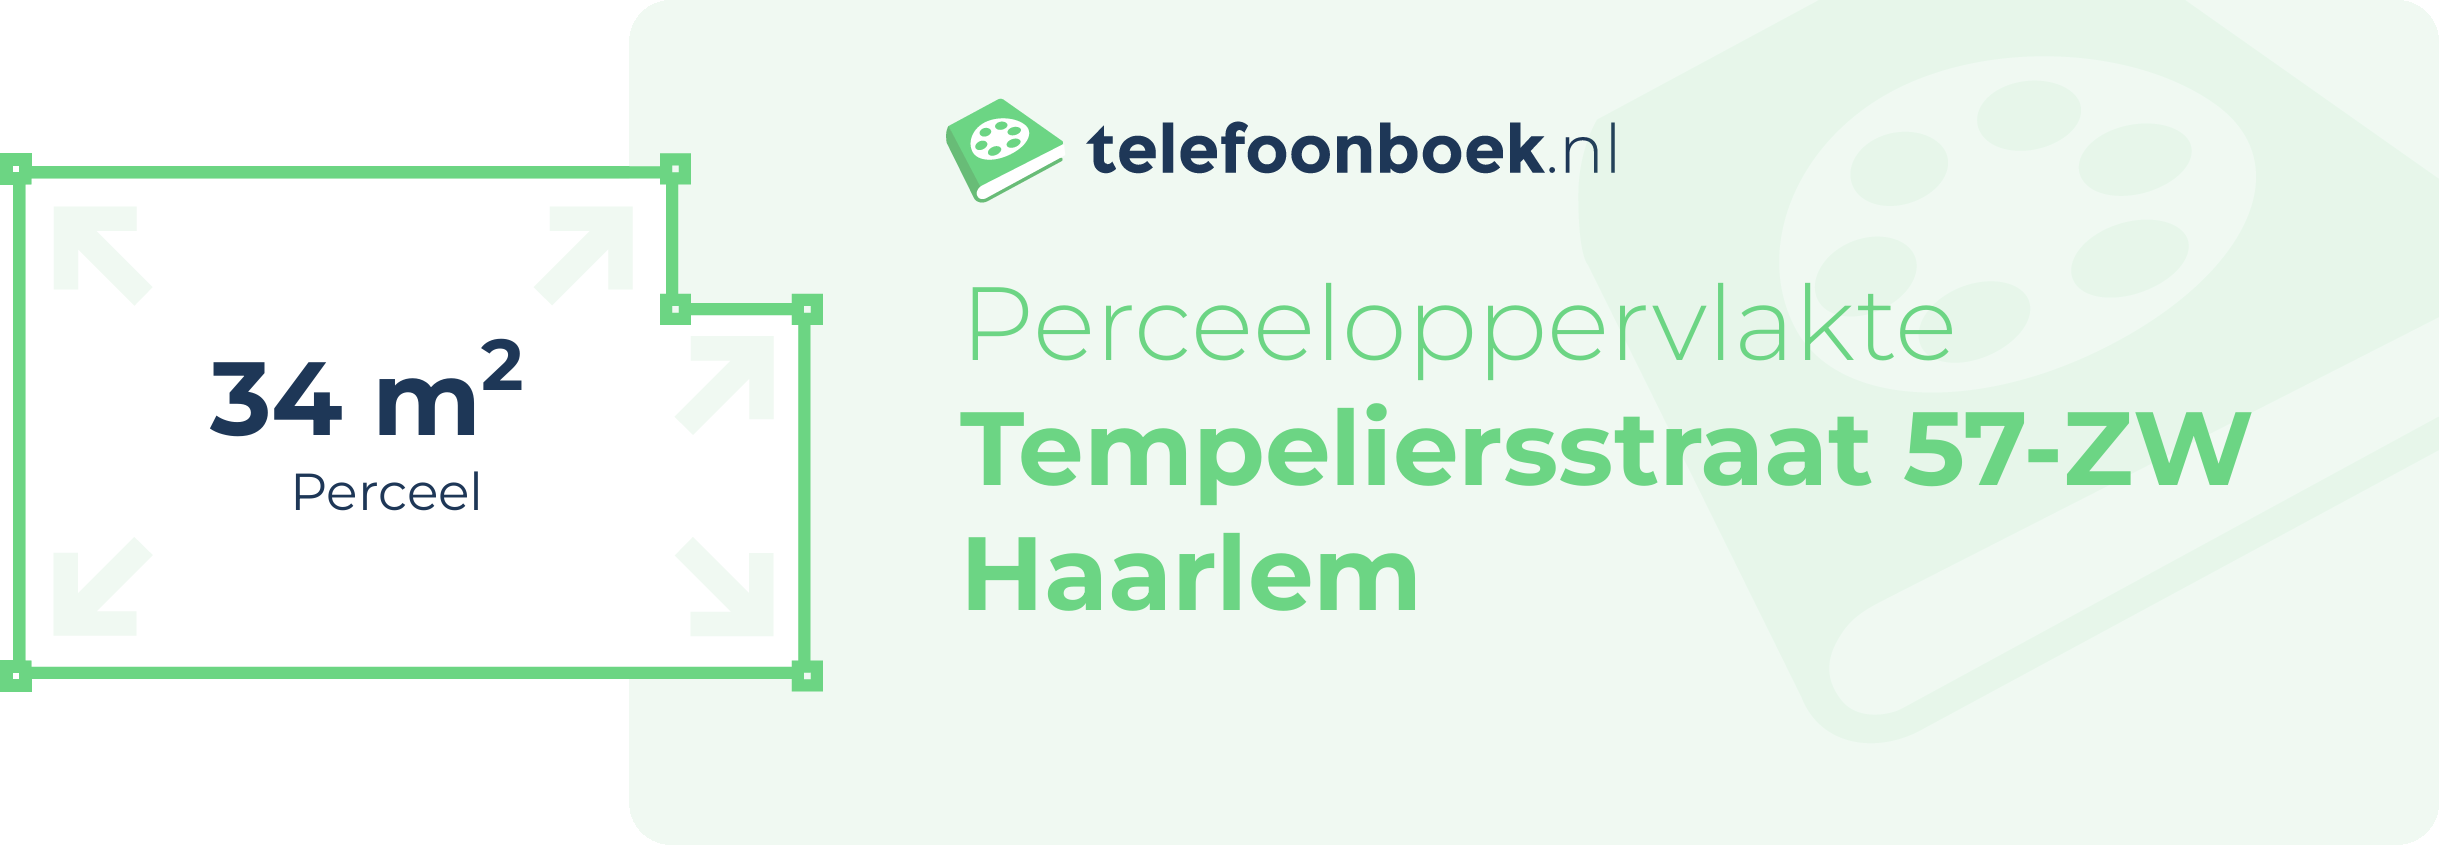 Perceeloppervlakte Tempeliersstraat 57-ZW Haarlem